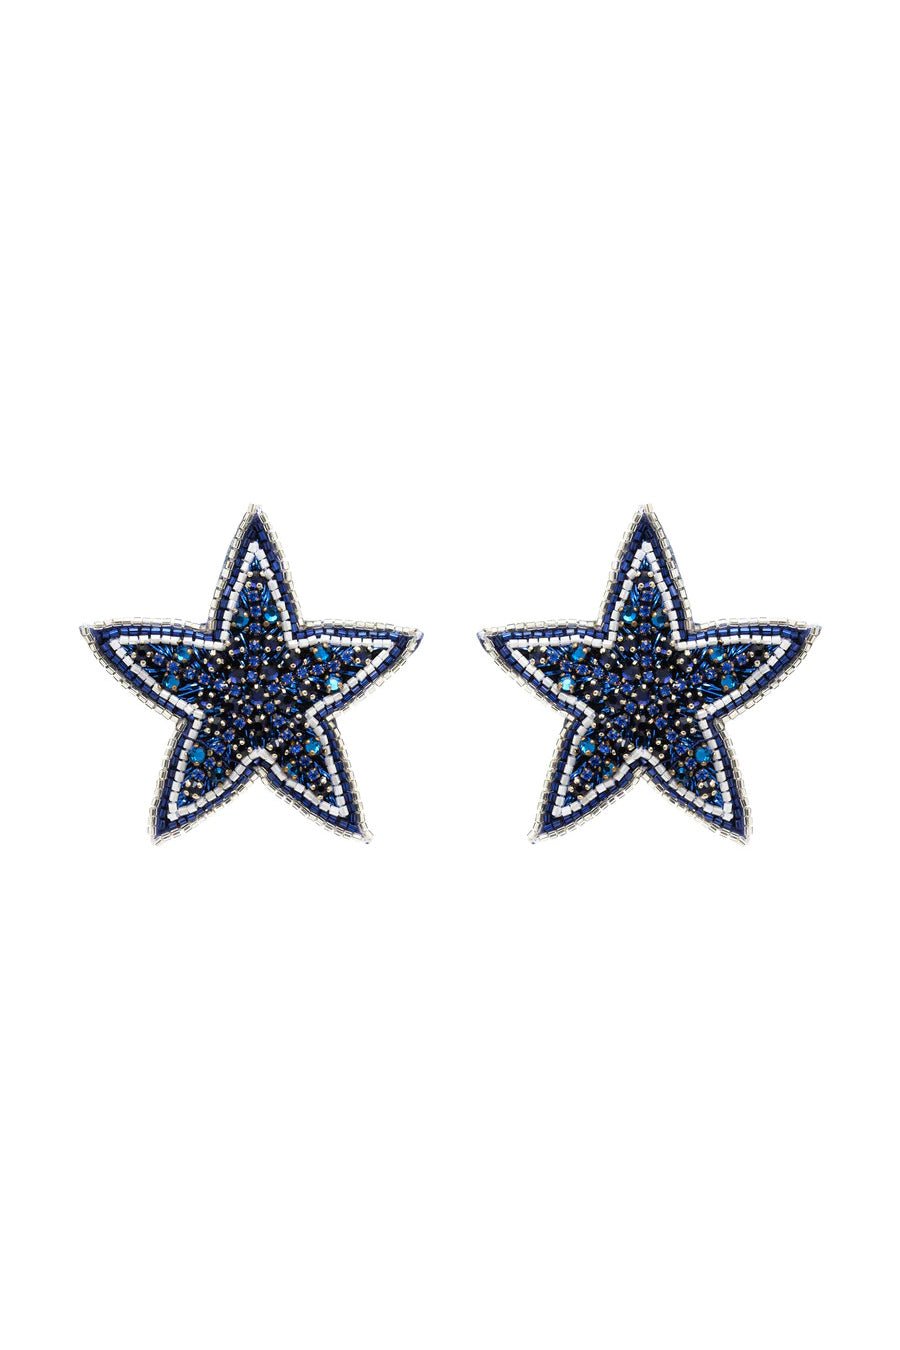 Navy Blue Beaded Star Stud Earrings - Mignonne Gavigan - Color Game